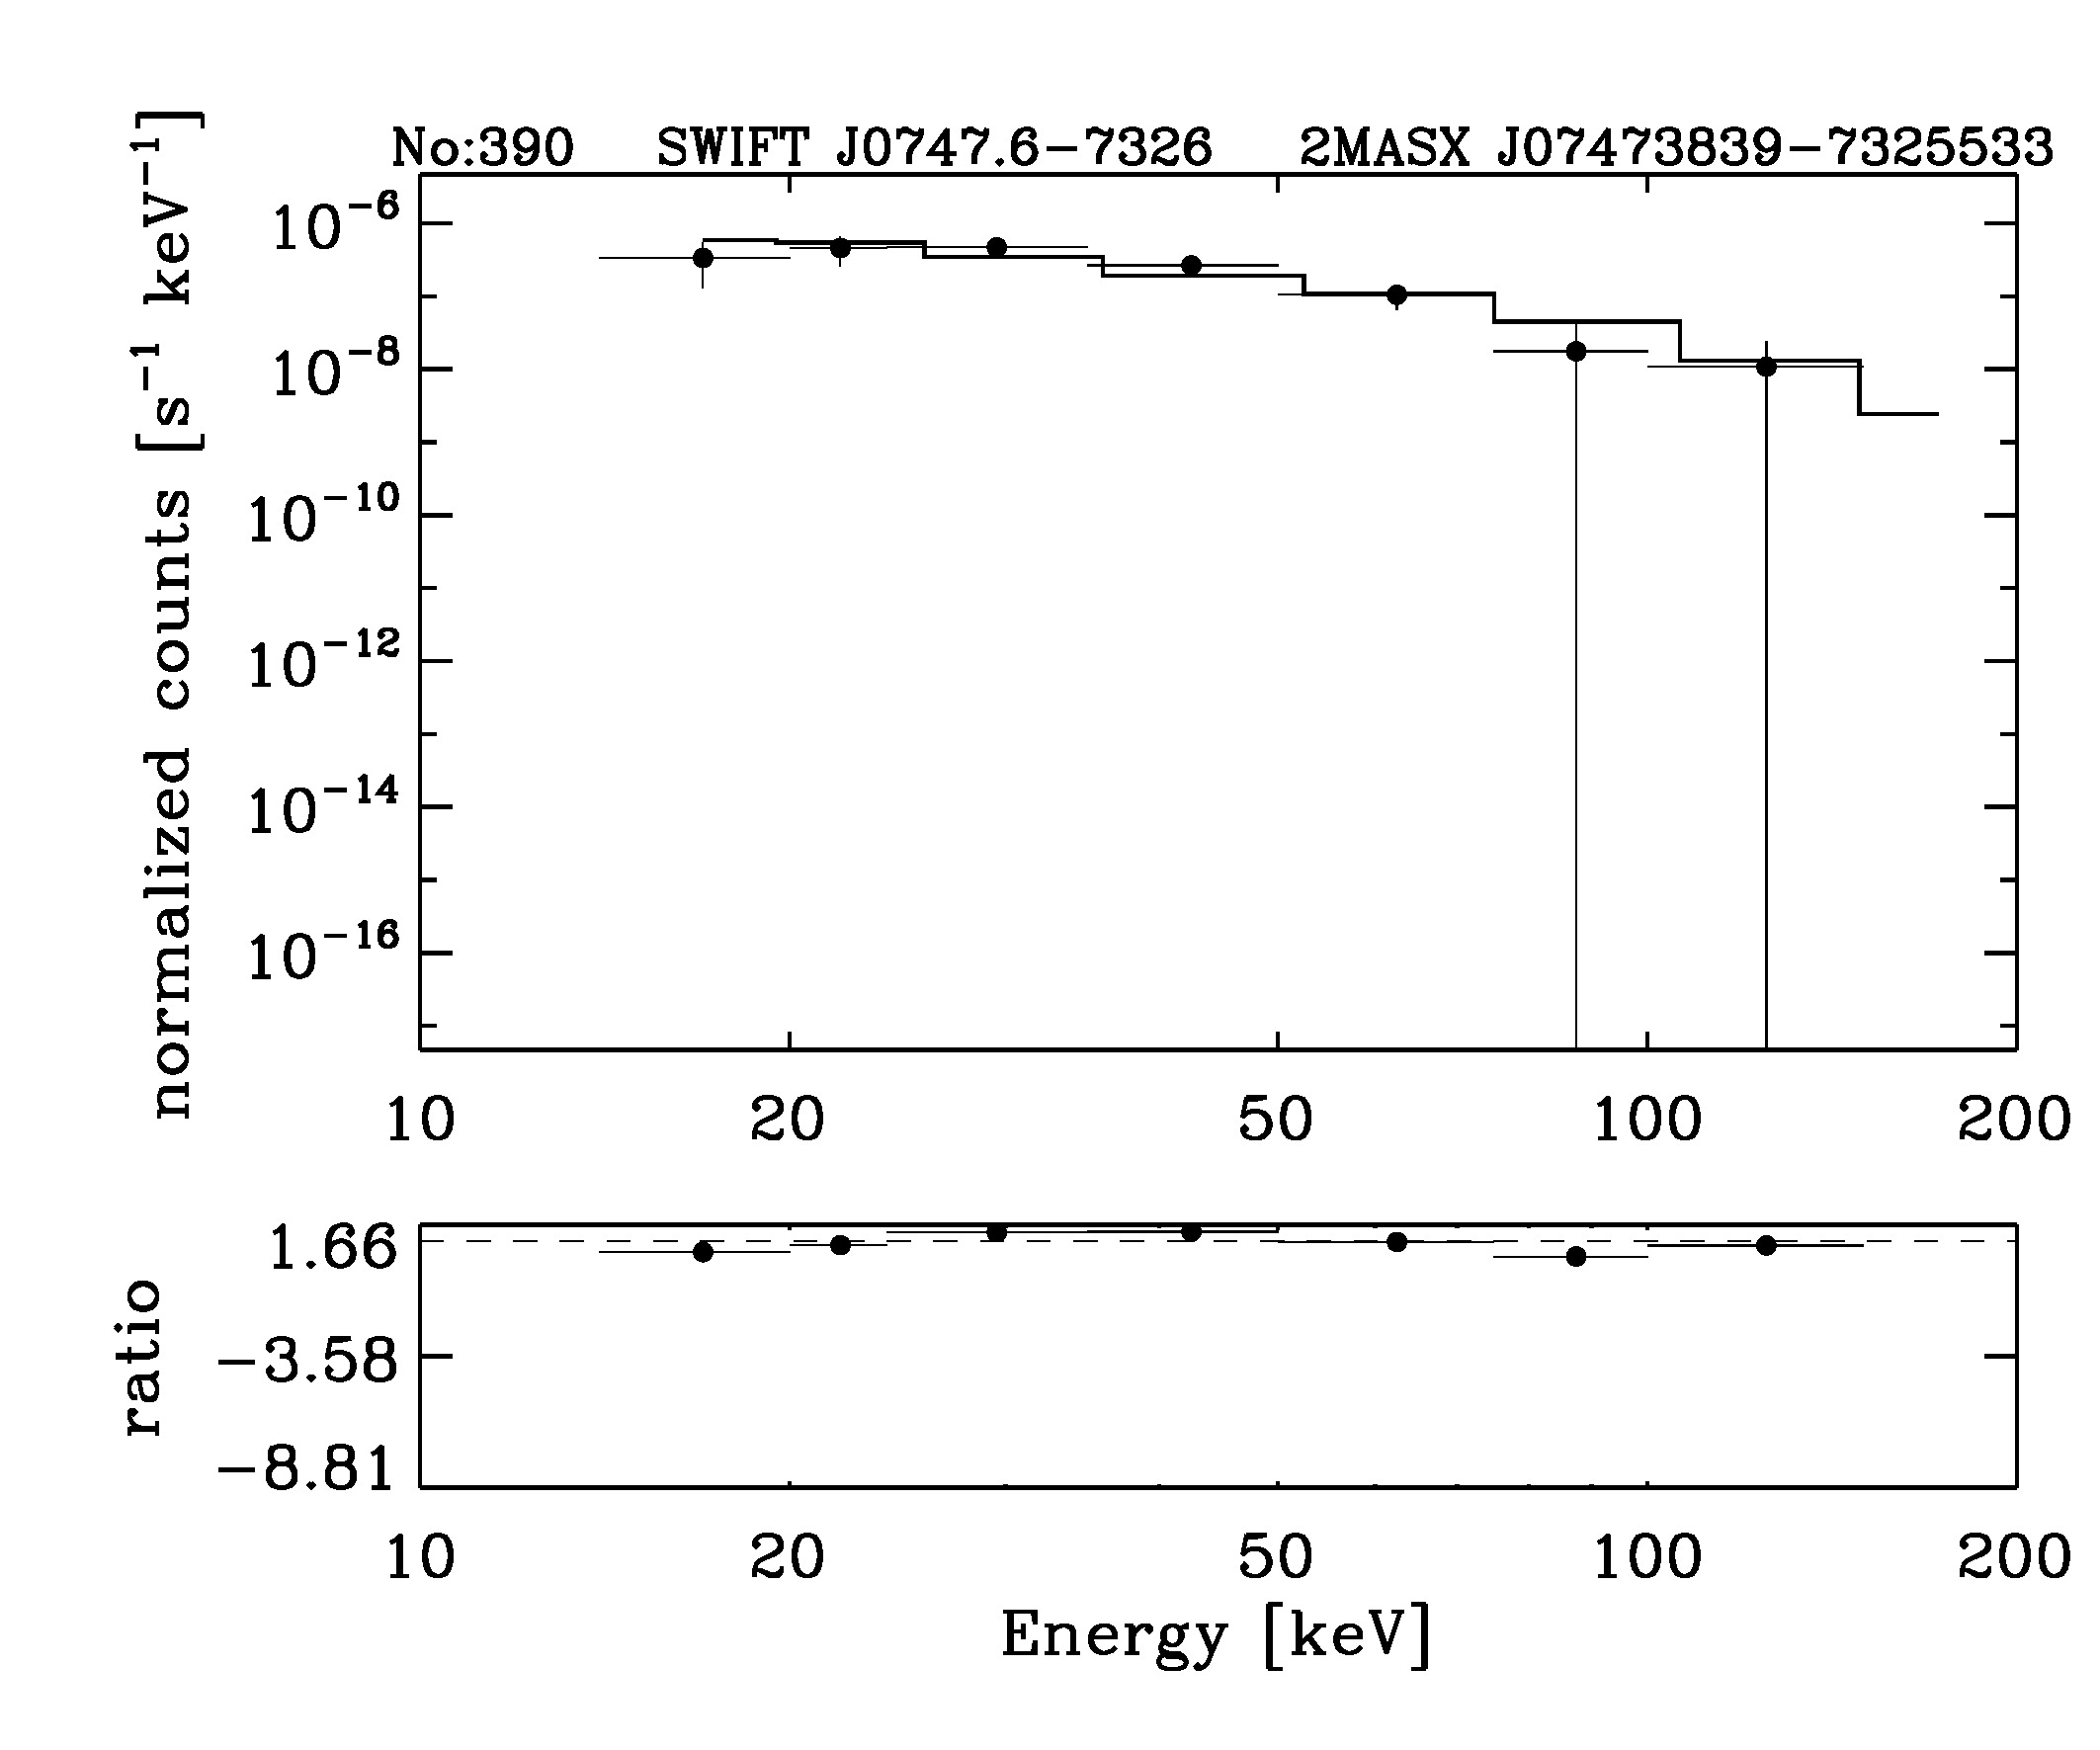 BAT Spectrum for SWIFT J0747.6-7326